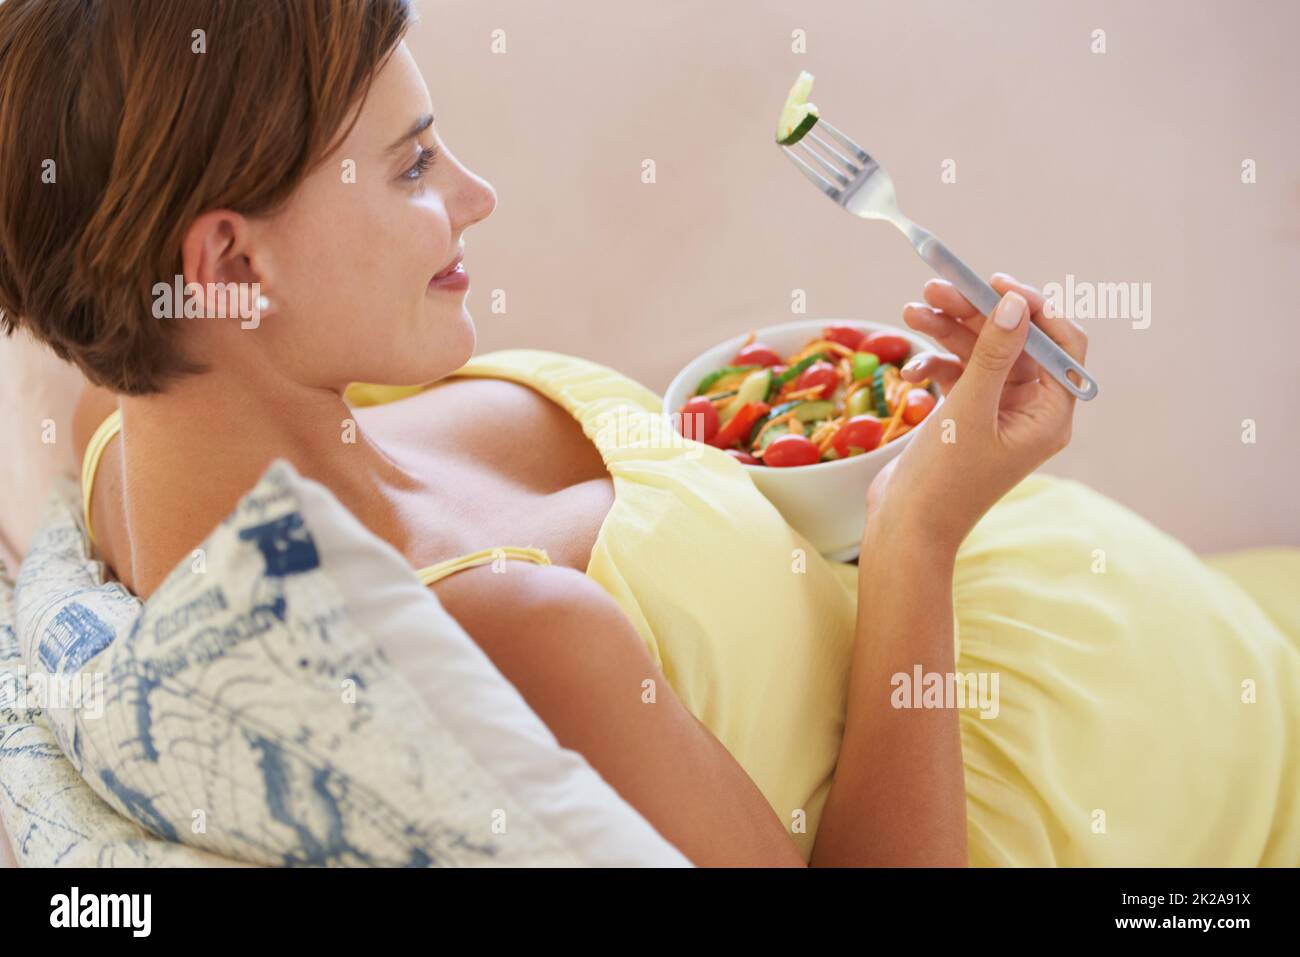 Lecker. Eine junge Schwangere genießt einen gesunden Salat, während sie sich auf der Couch entspannt. Stockfoto